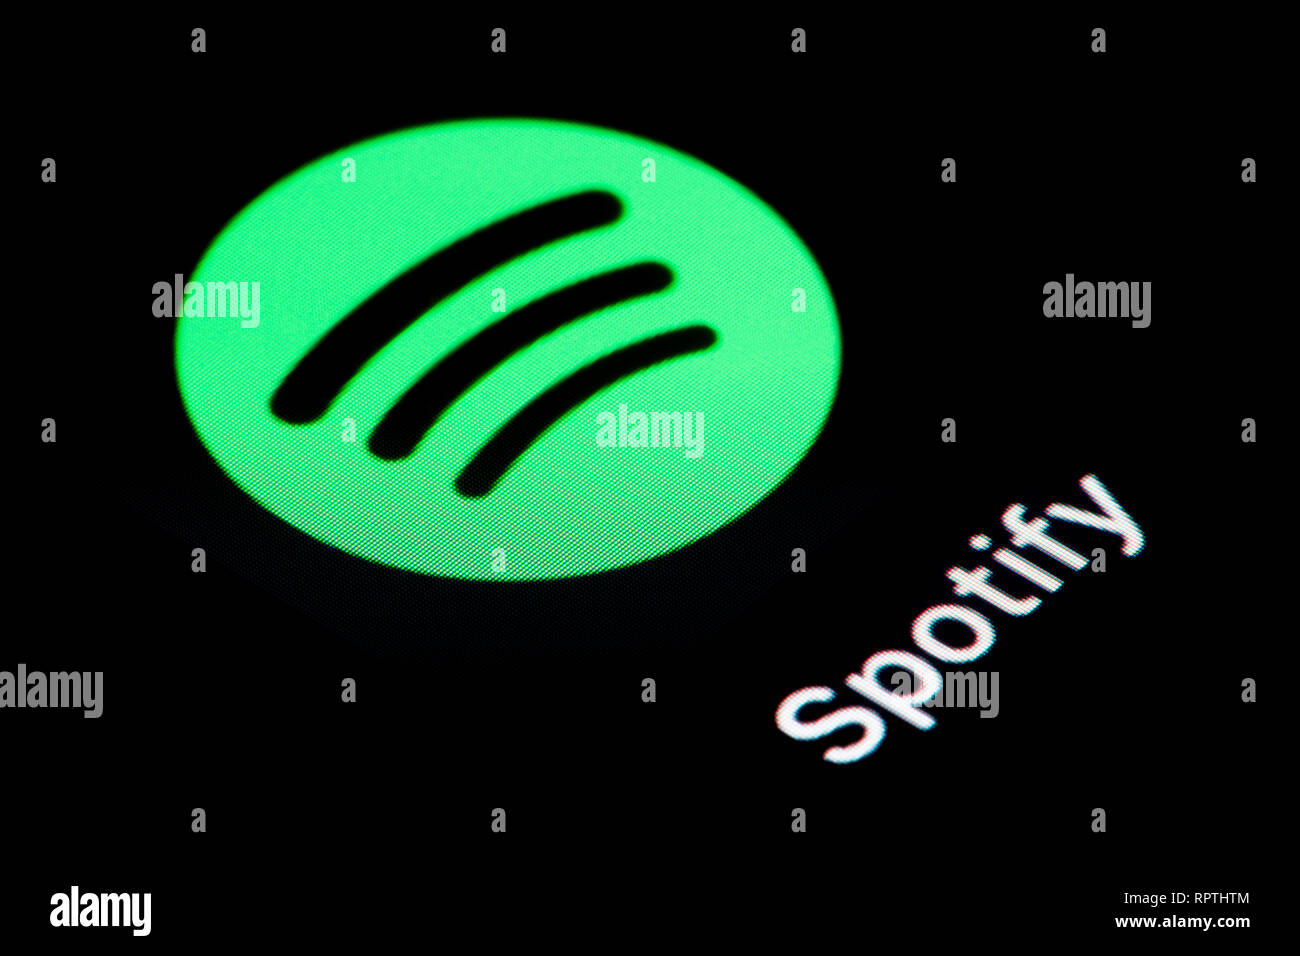 Un gros plan de l'icône de l'application Spotify, comme on le voit sur l'écran d'un téléphone intelligent (usage éditorial uniquement) Banque D'Images